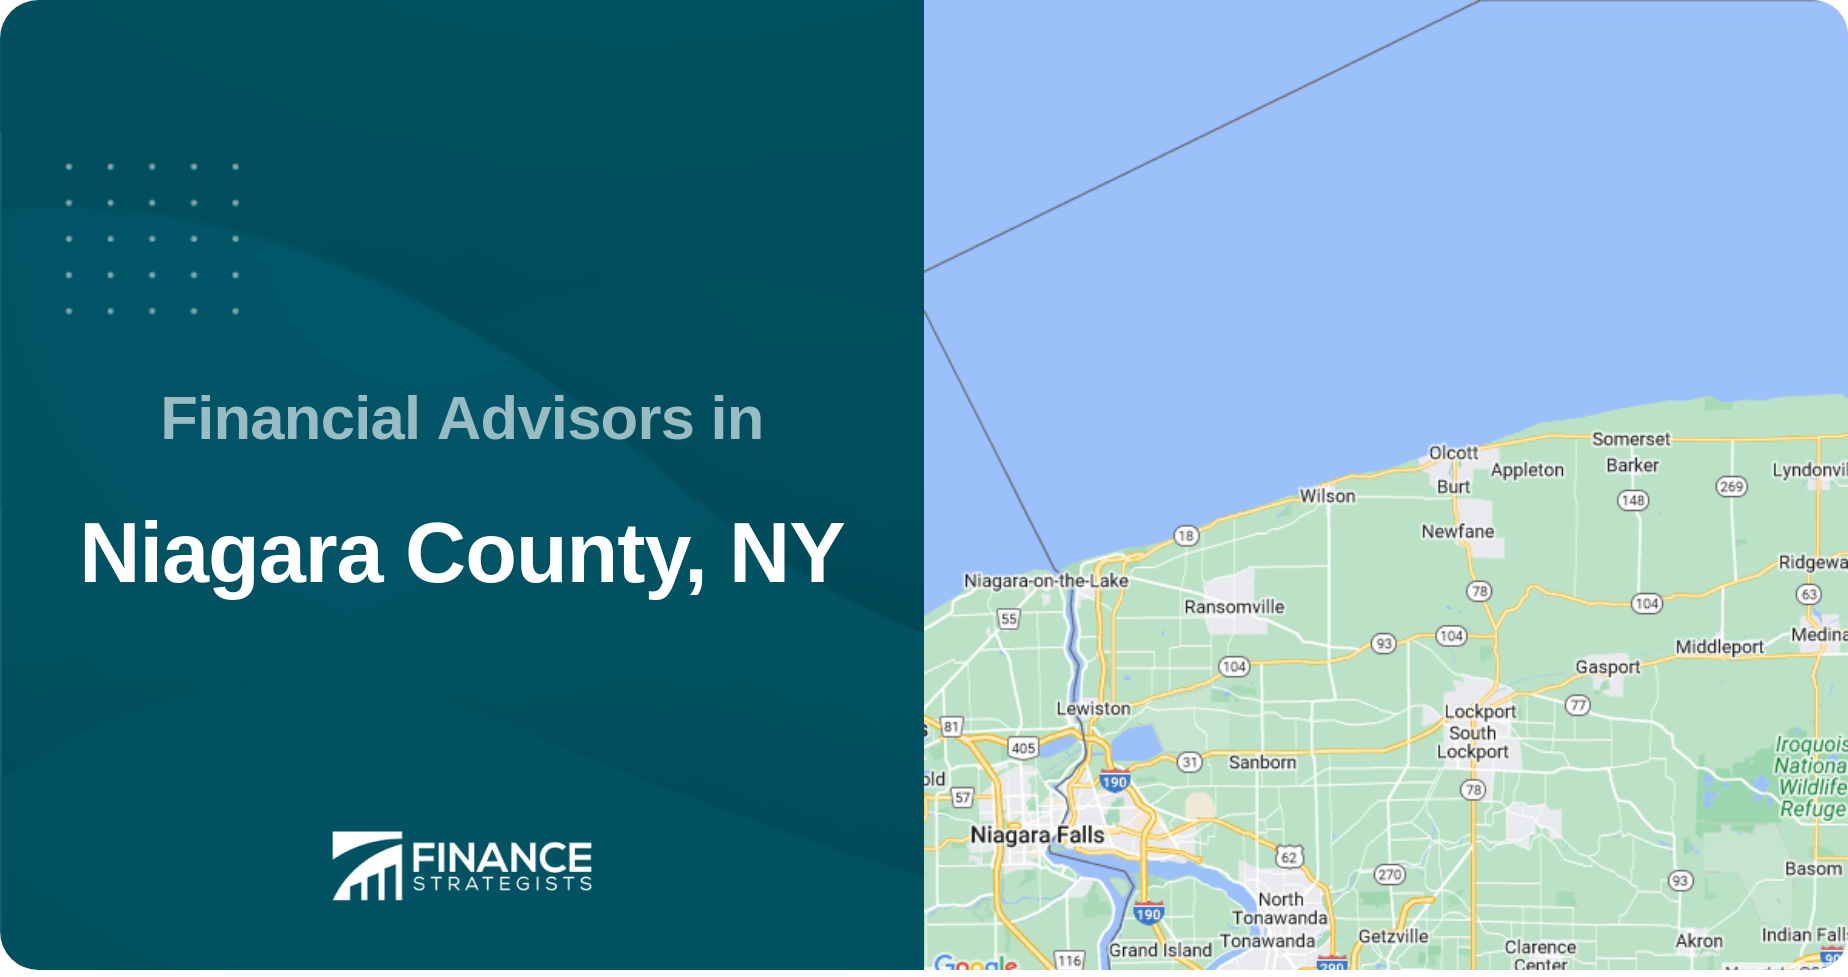 Financial Advisors in Niagara County, NY